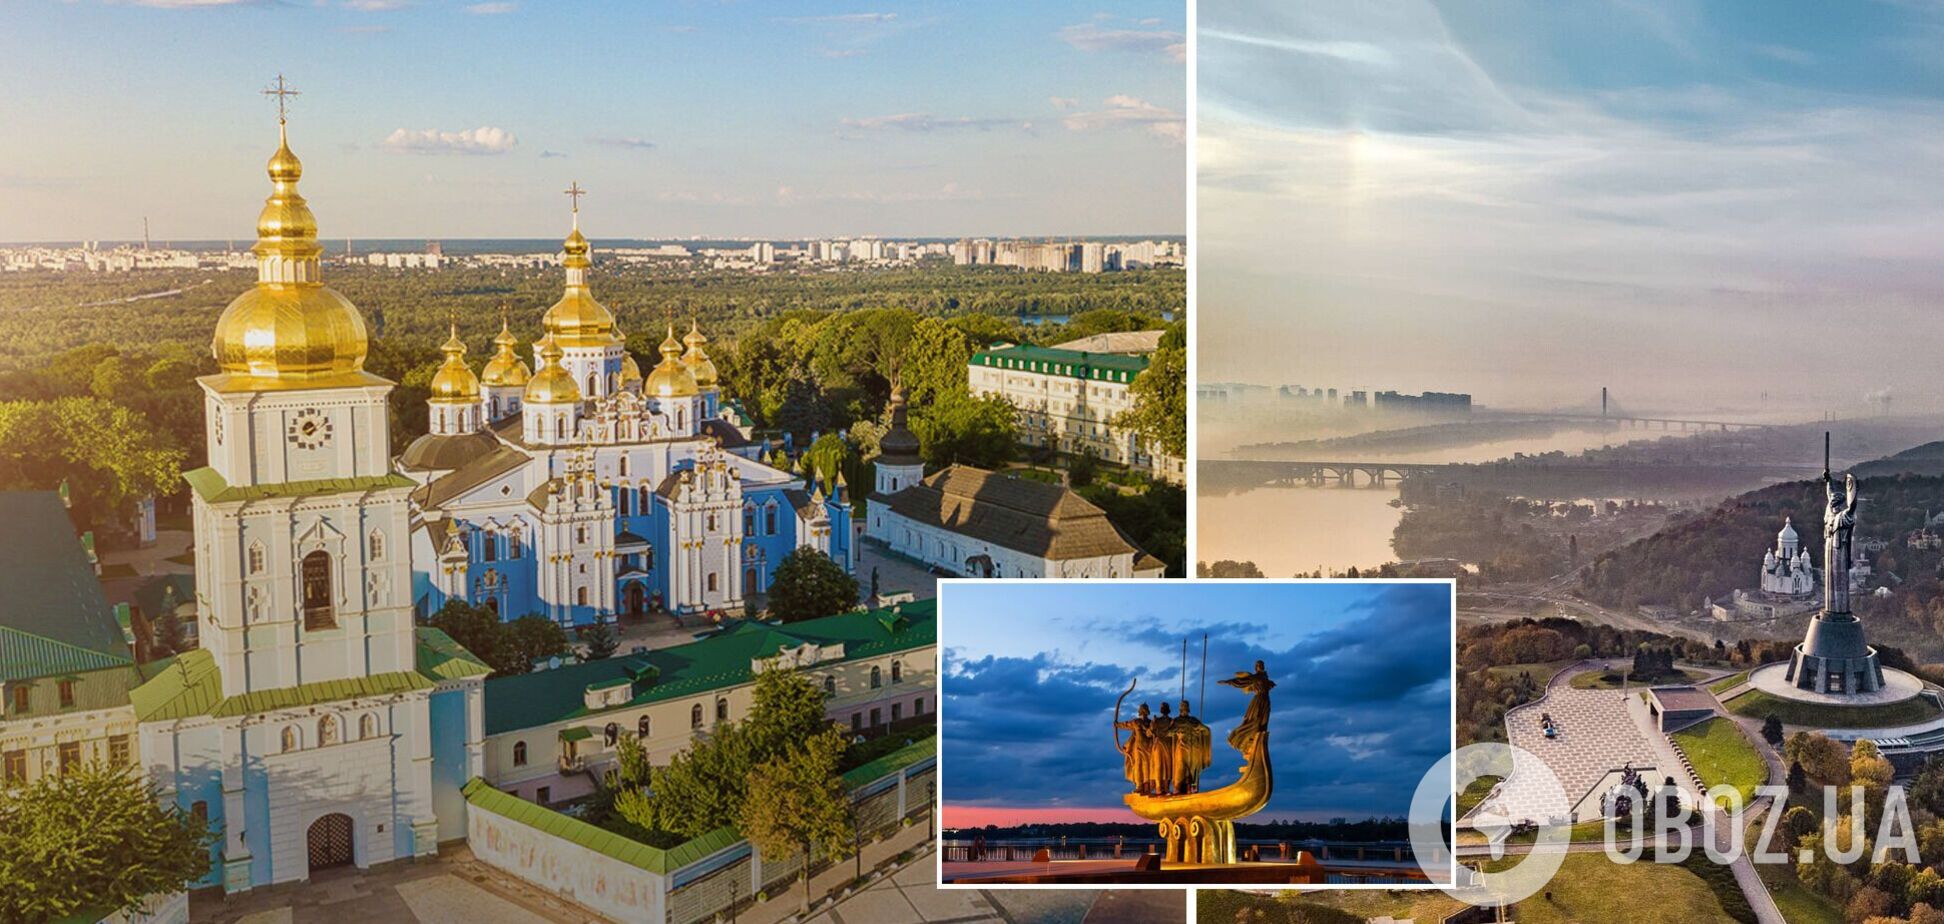 Киев попал в сотню лучших и инвестиционно привлекательных городов мира по данным рейтинга Best Cities Reports 2021